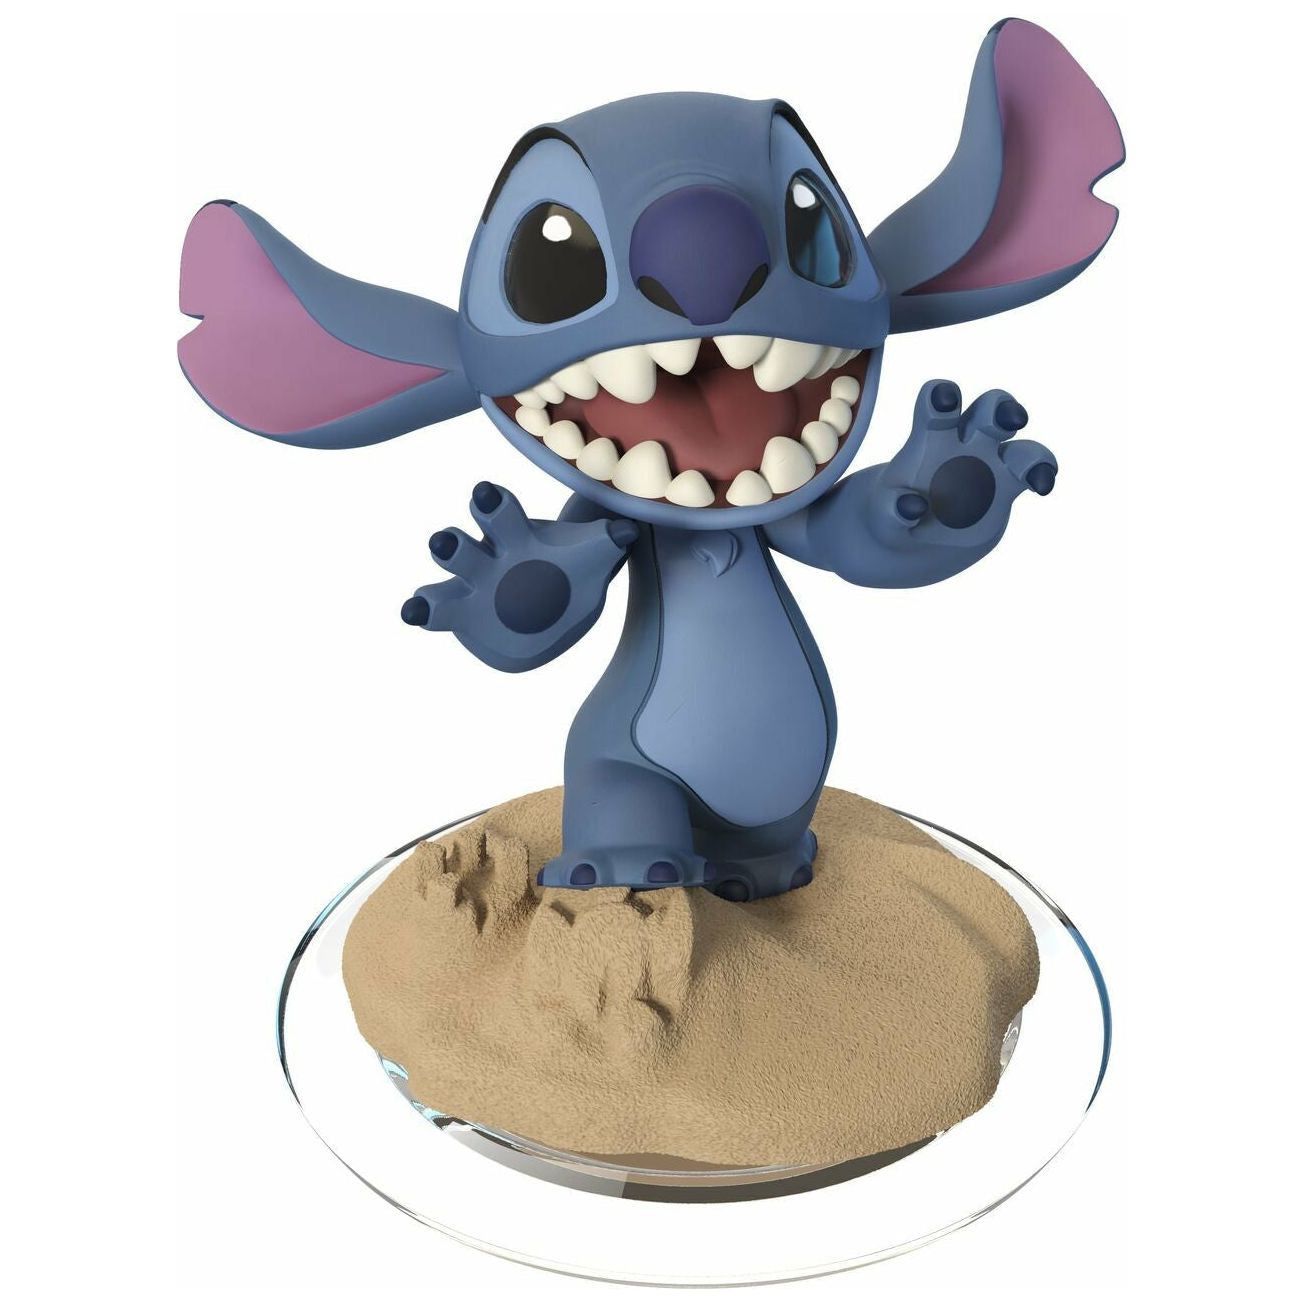 Disney Infinity 2.0 - Figurine Stitch